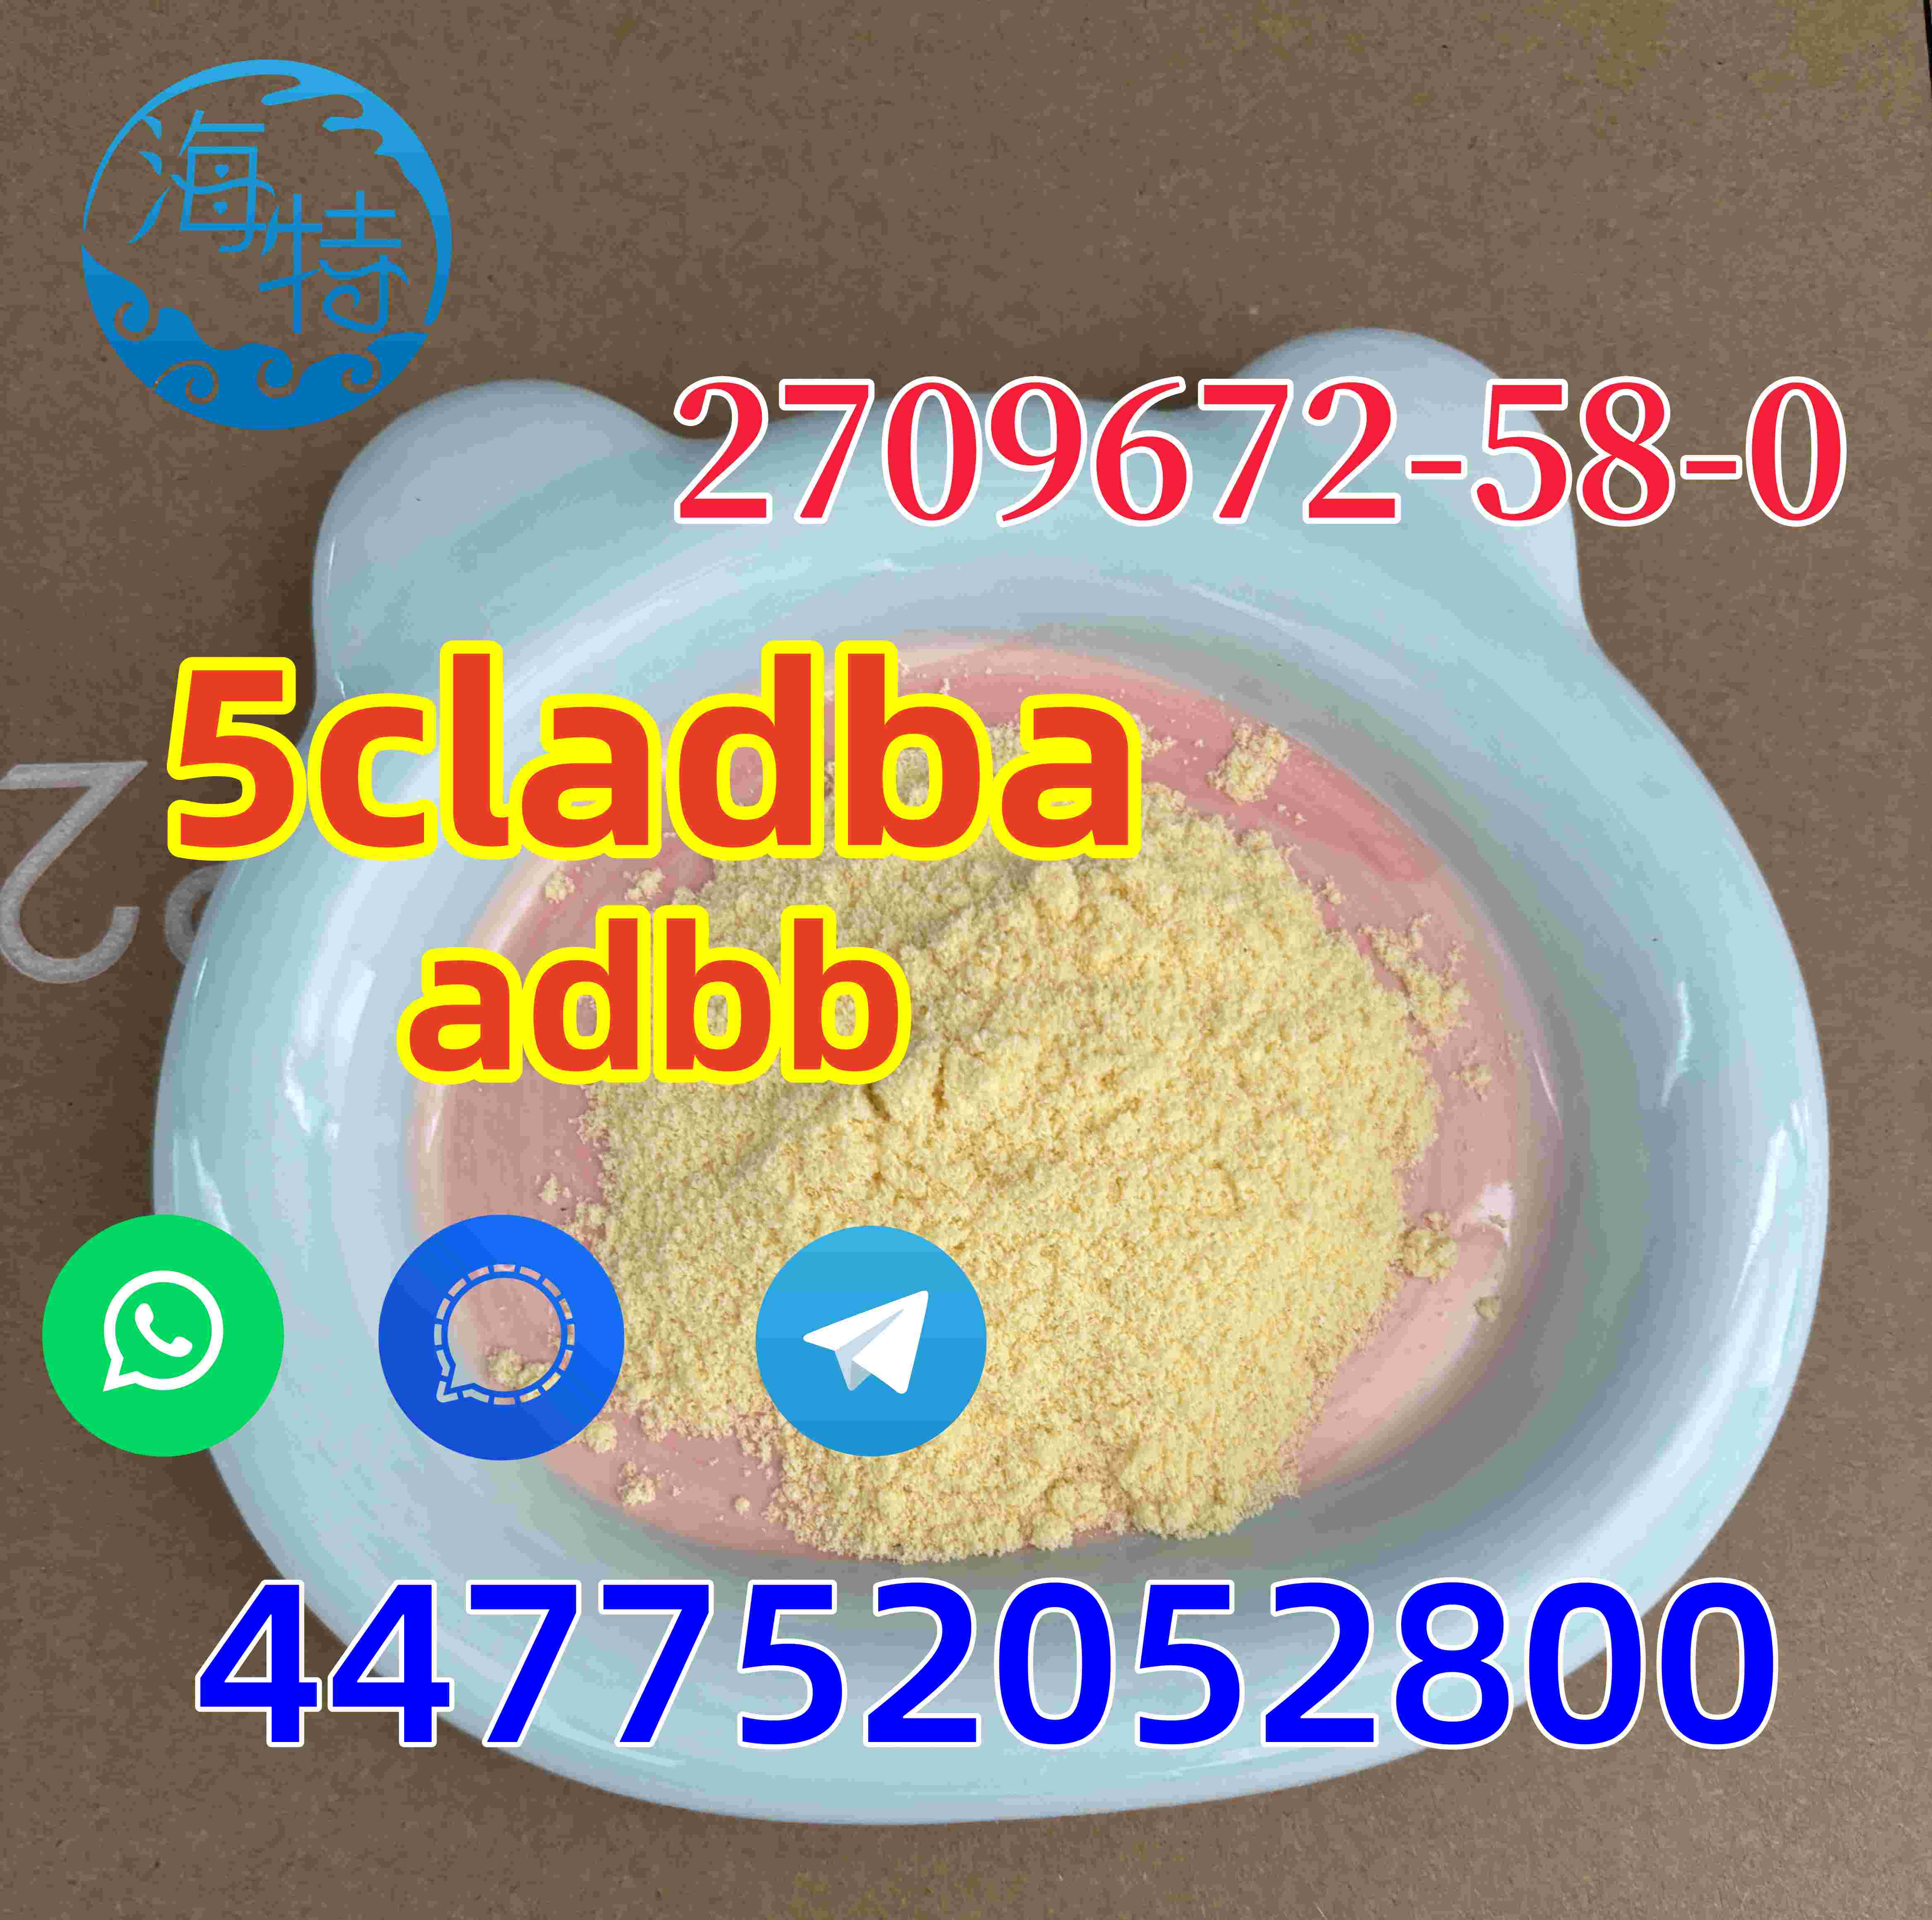 CAS  Methyl (S)-2-(1H-indazole-3-carboxamido) 5cladba 4fadb 5fadb adbb 